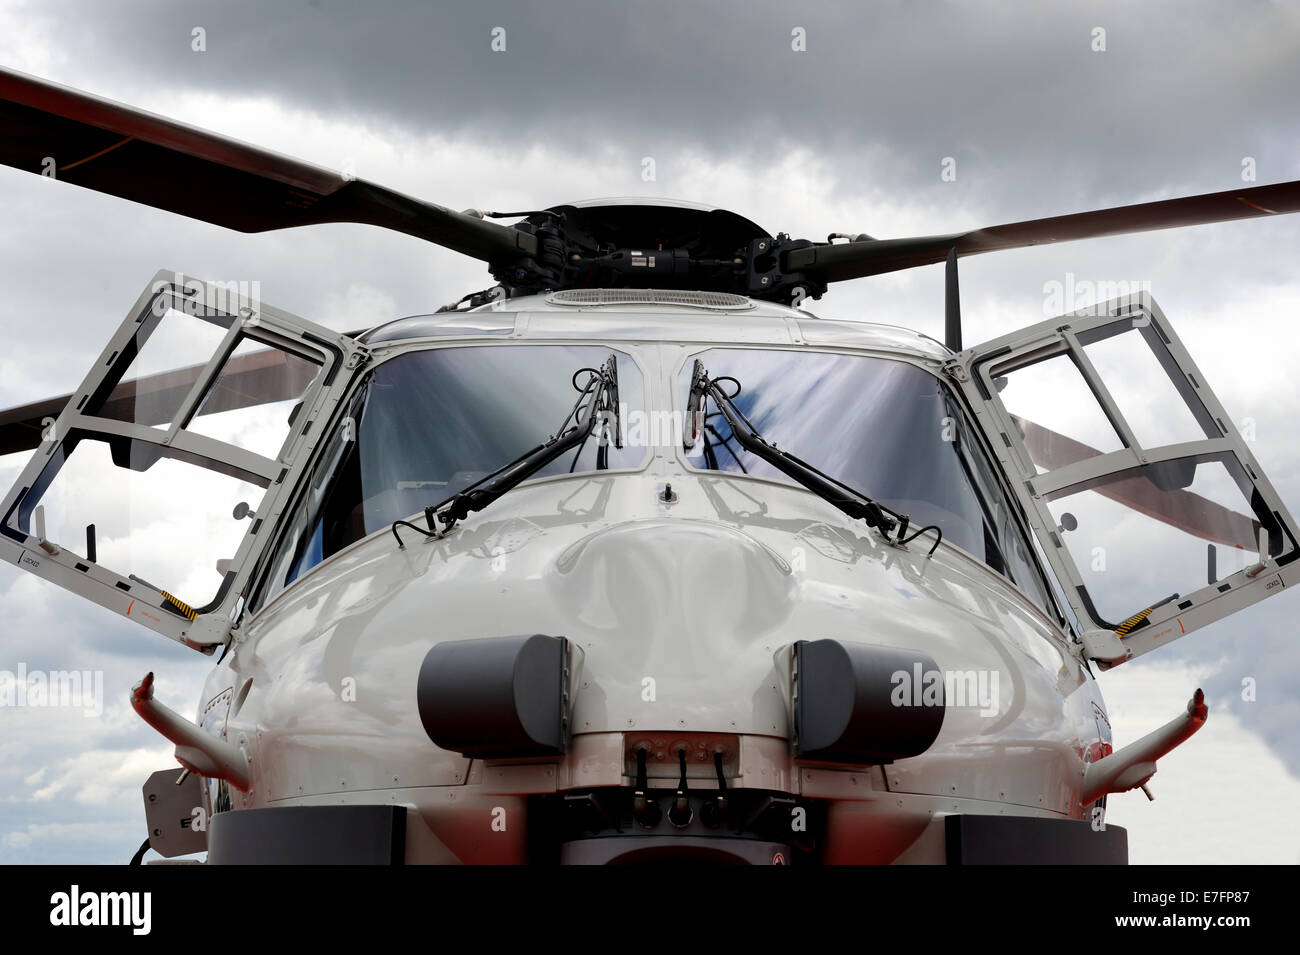 AgustaWestland AW159 Wildcat AH1hélicoptère à Farnborough Airshow 2012. (Vue de face) Banque D'Images